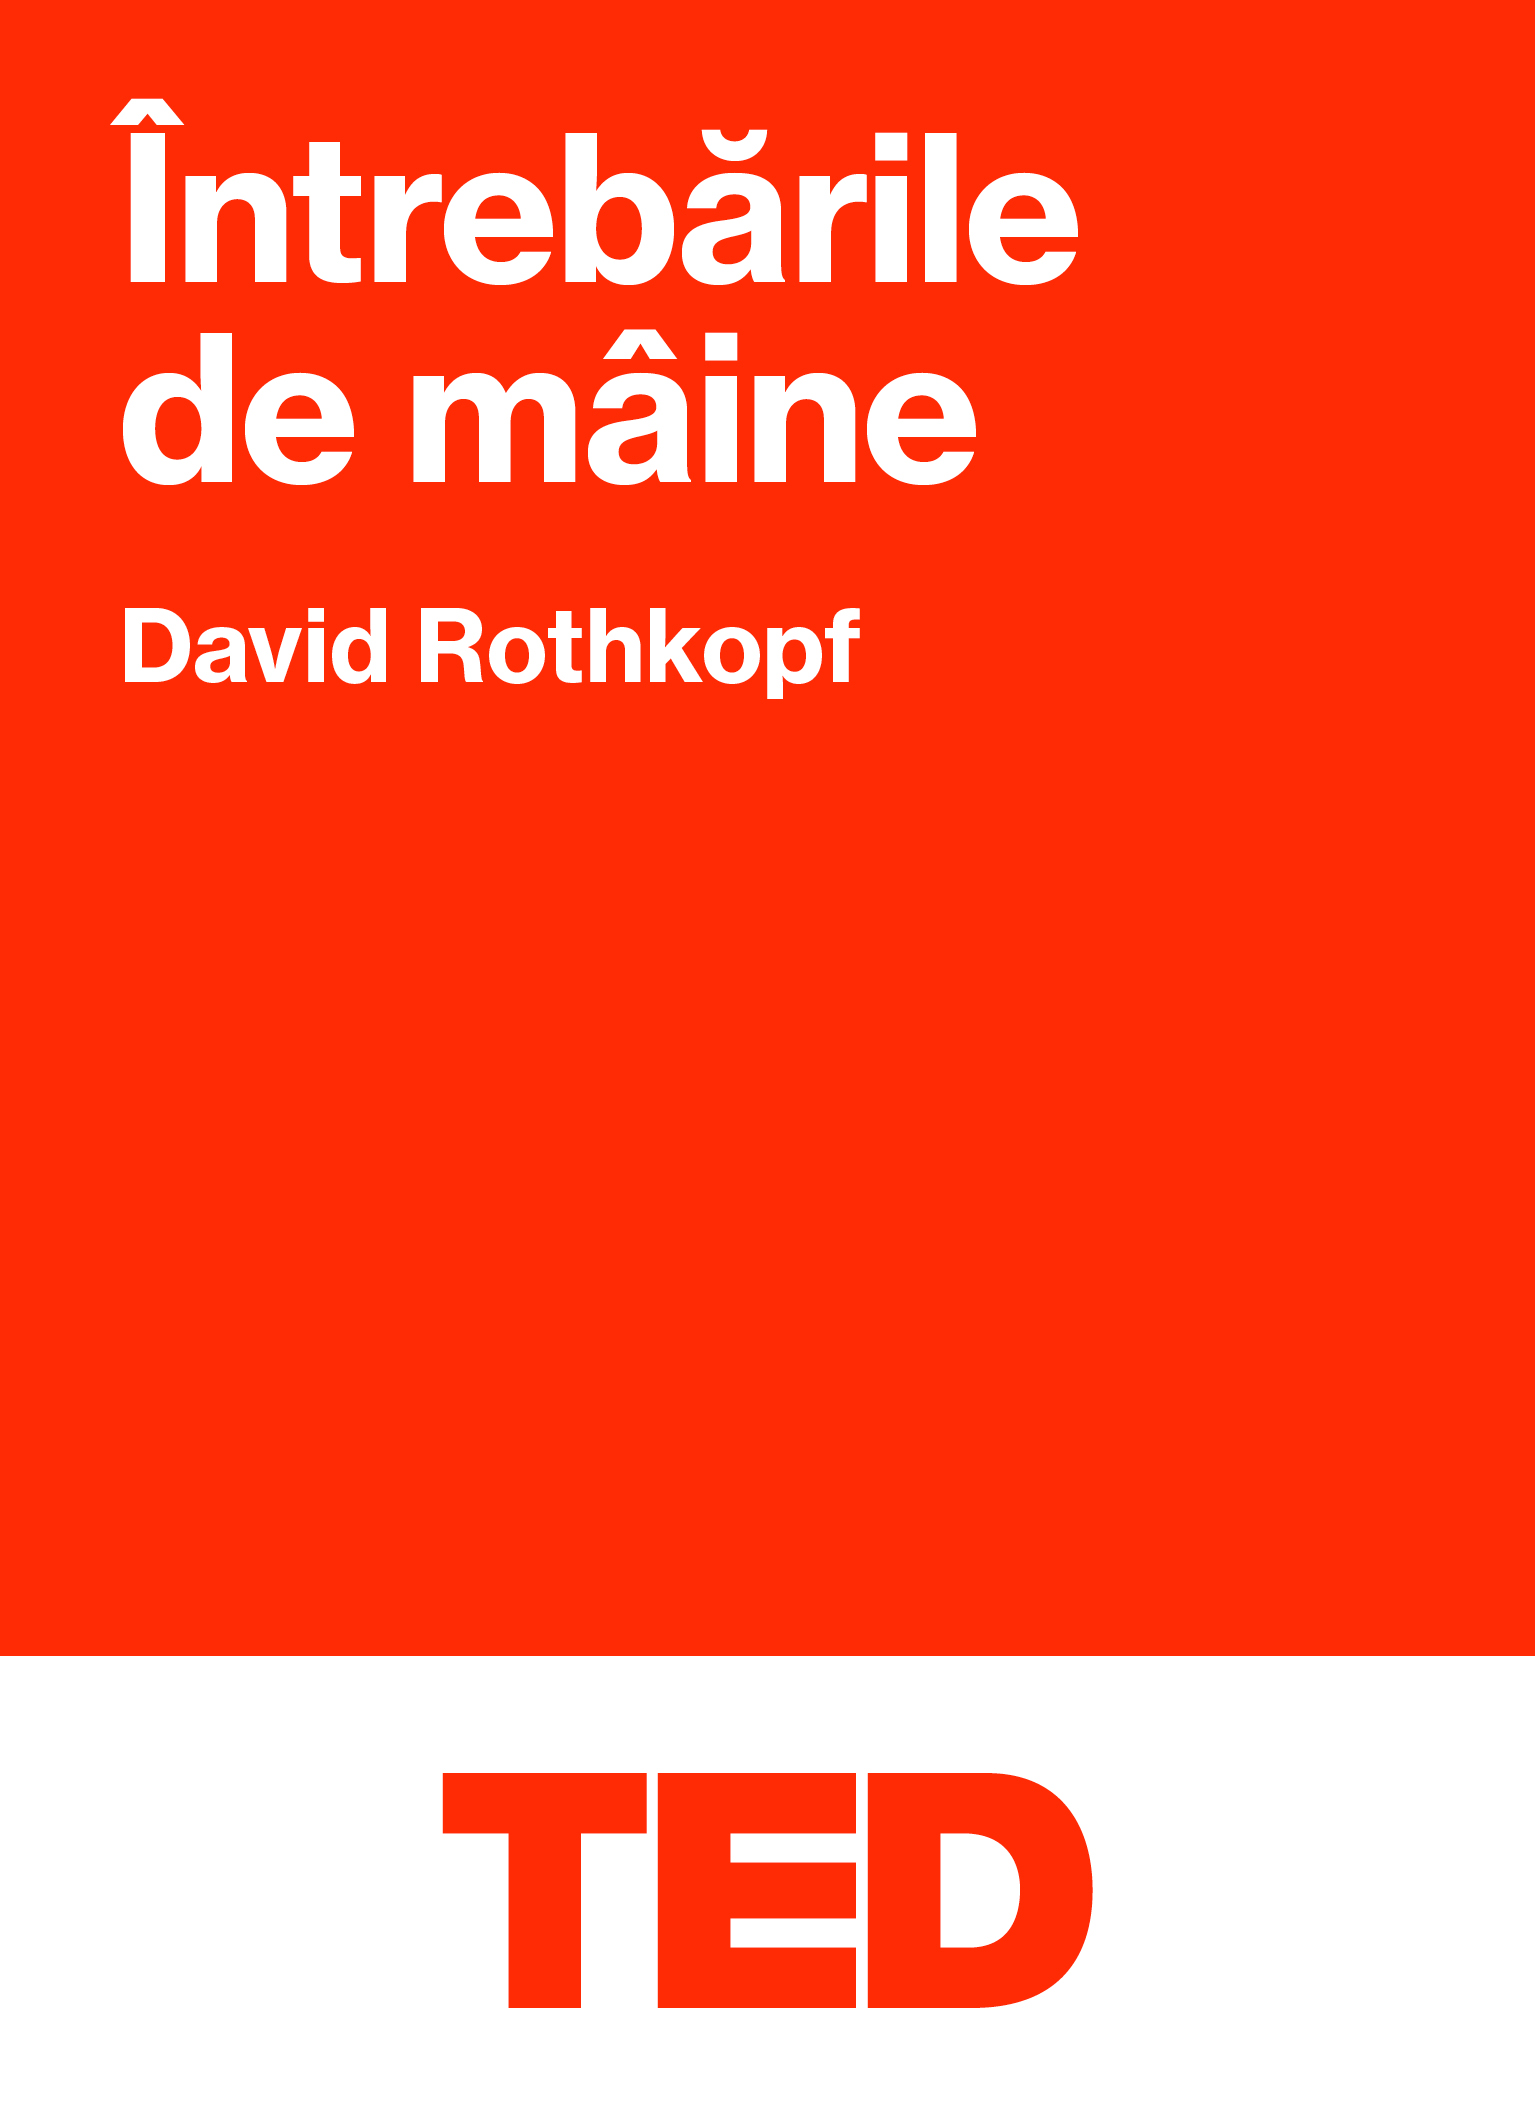 TED – Intrebarile de maine | David Rothkopf Black Button Books